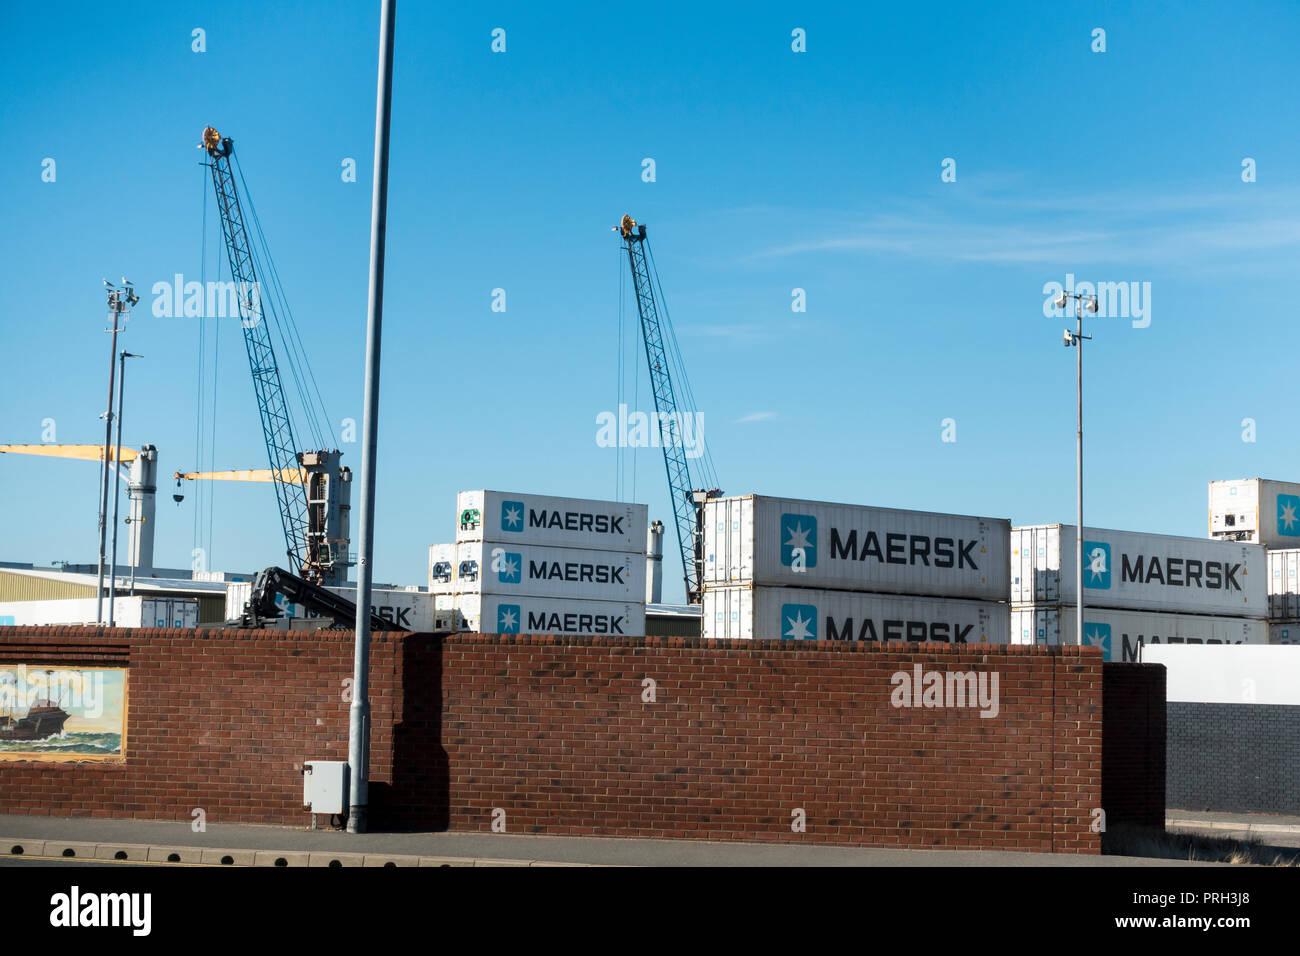 Les conteneurs de fret Maersk, port de Portsmouth, Angleterre, Royaume-Uni Banque D'Images